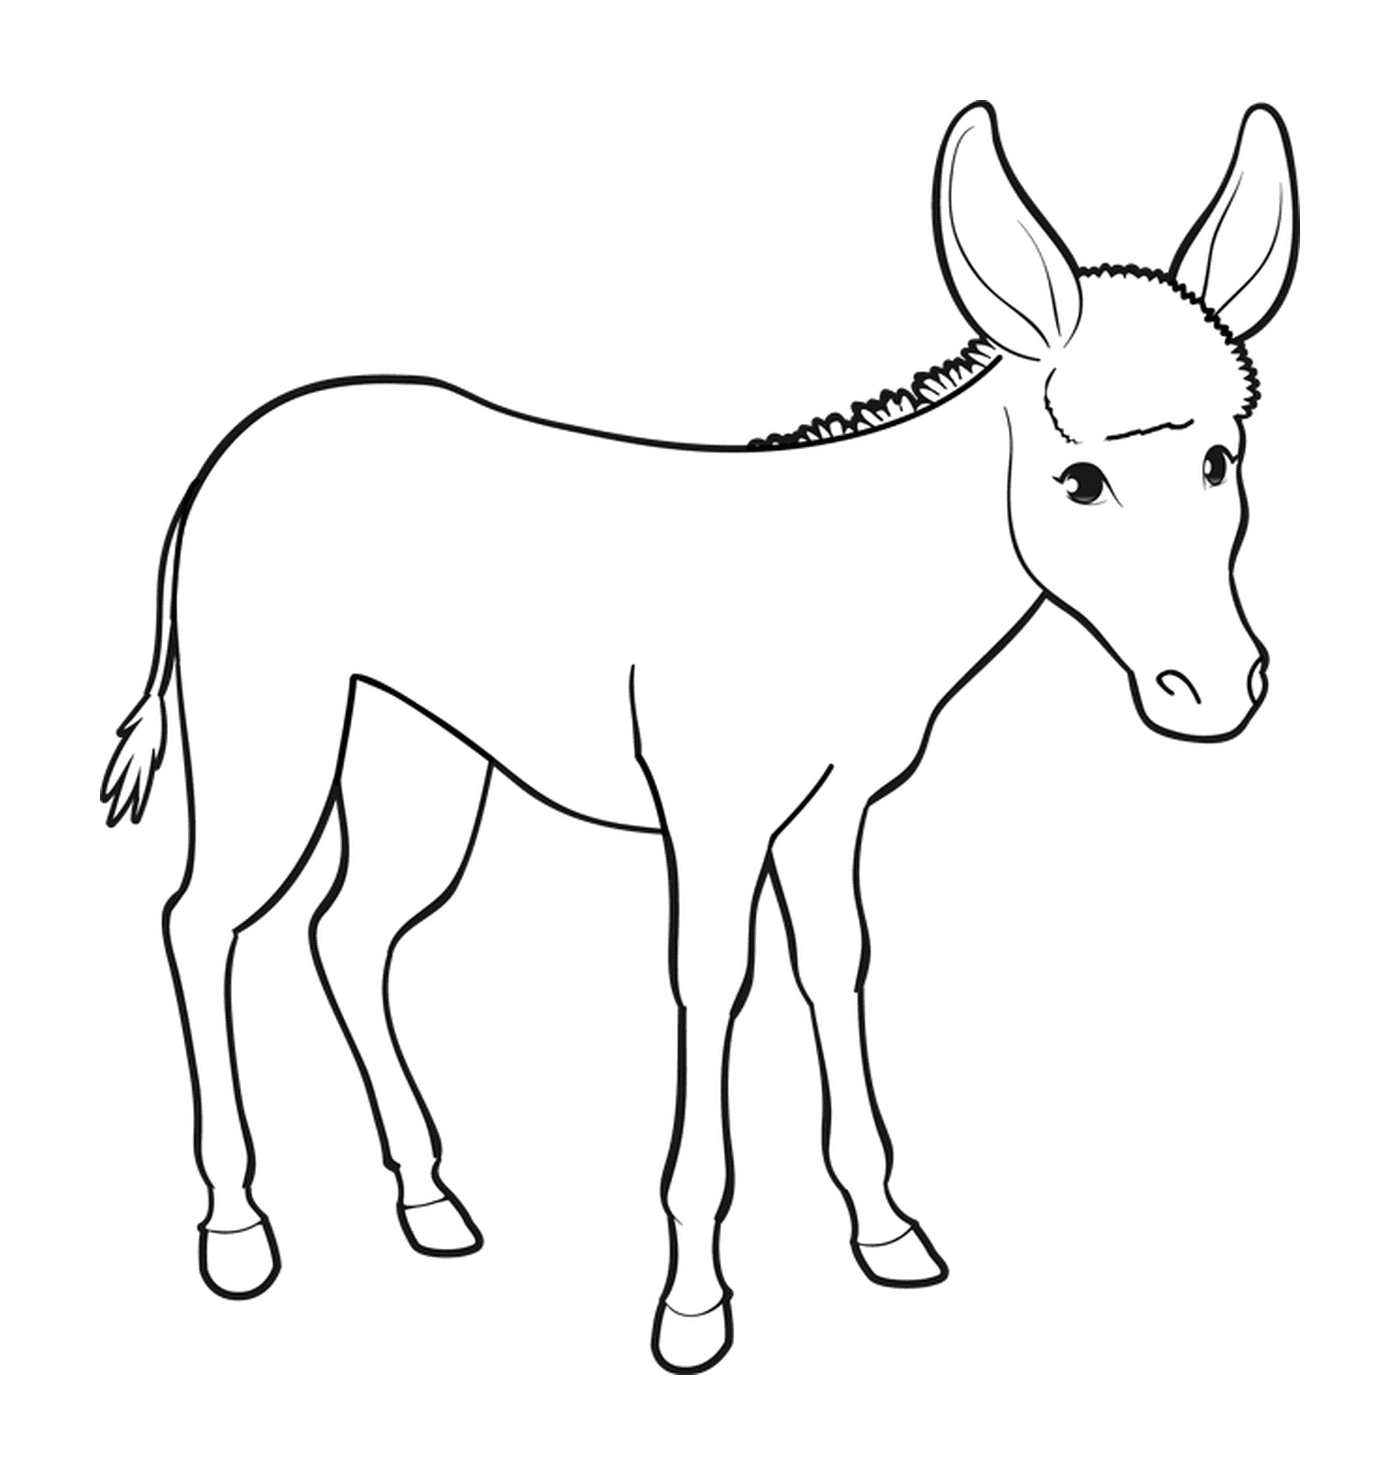  Un burro con orejas largas 